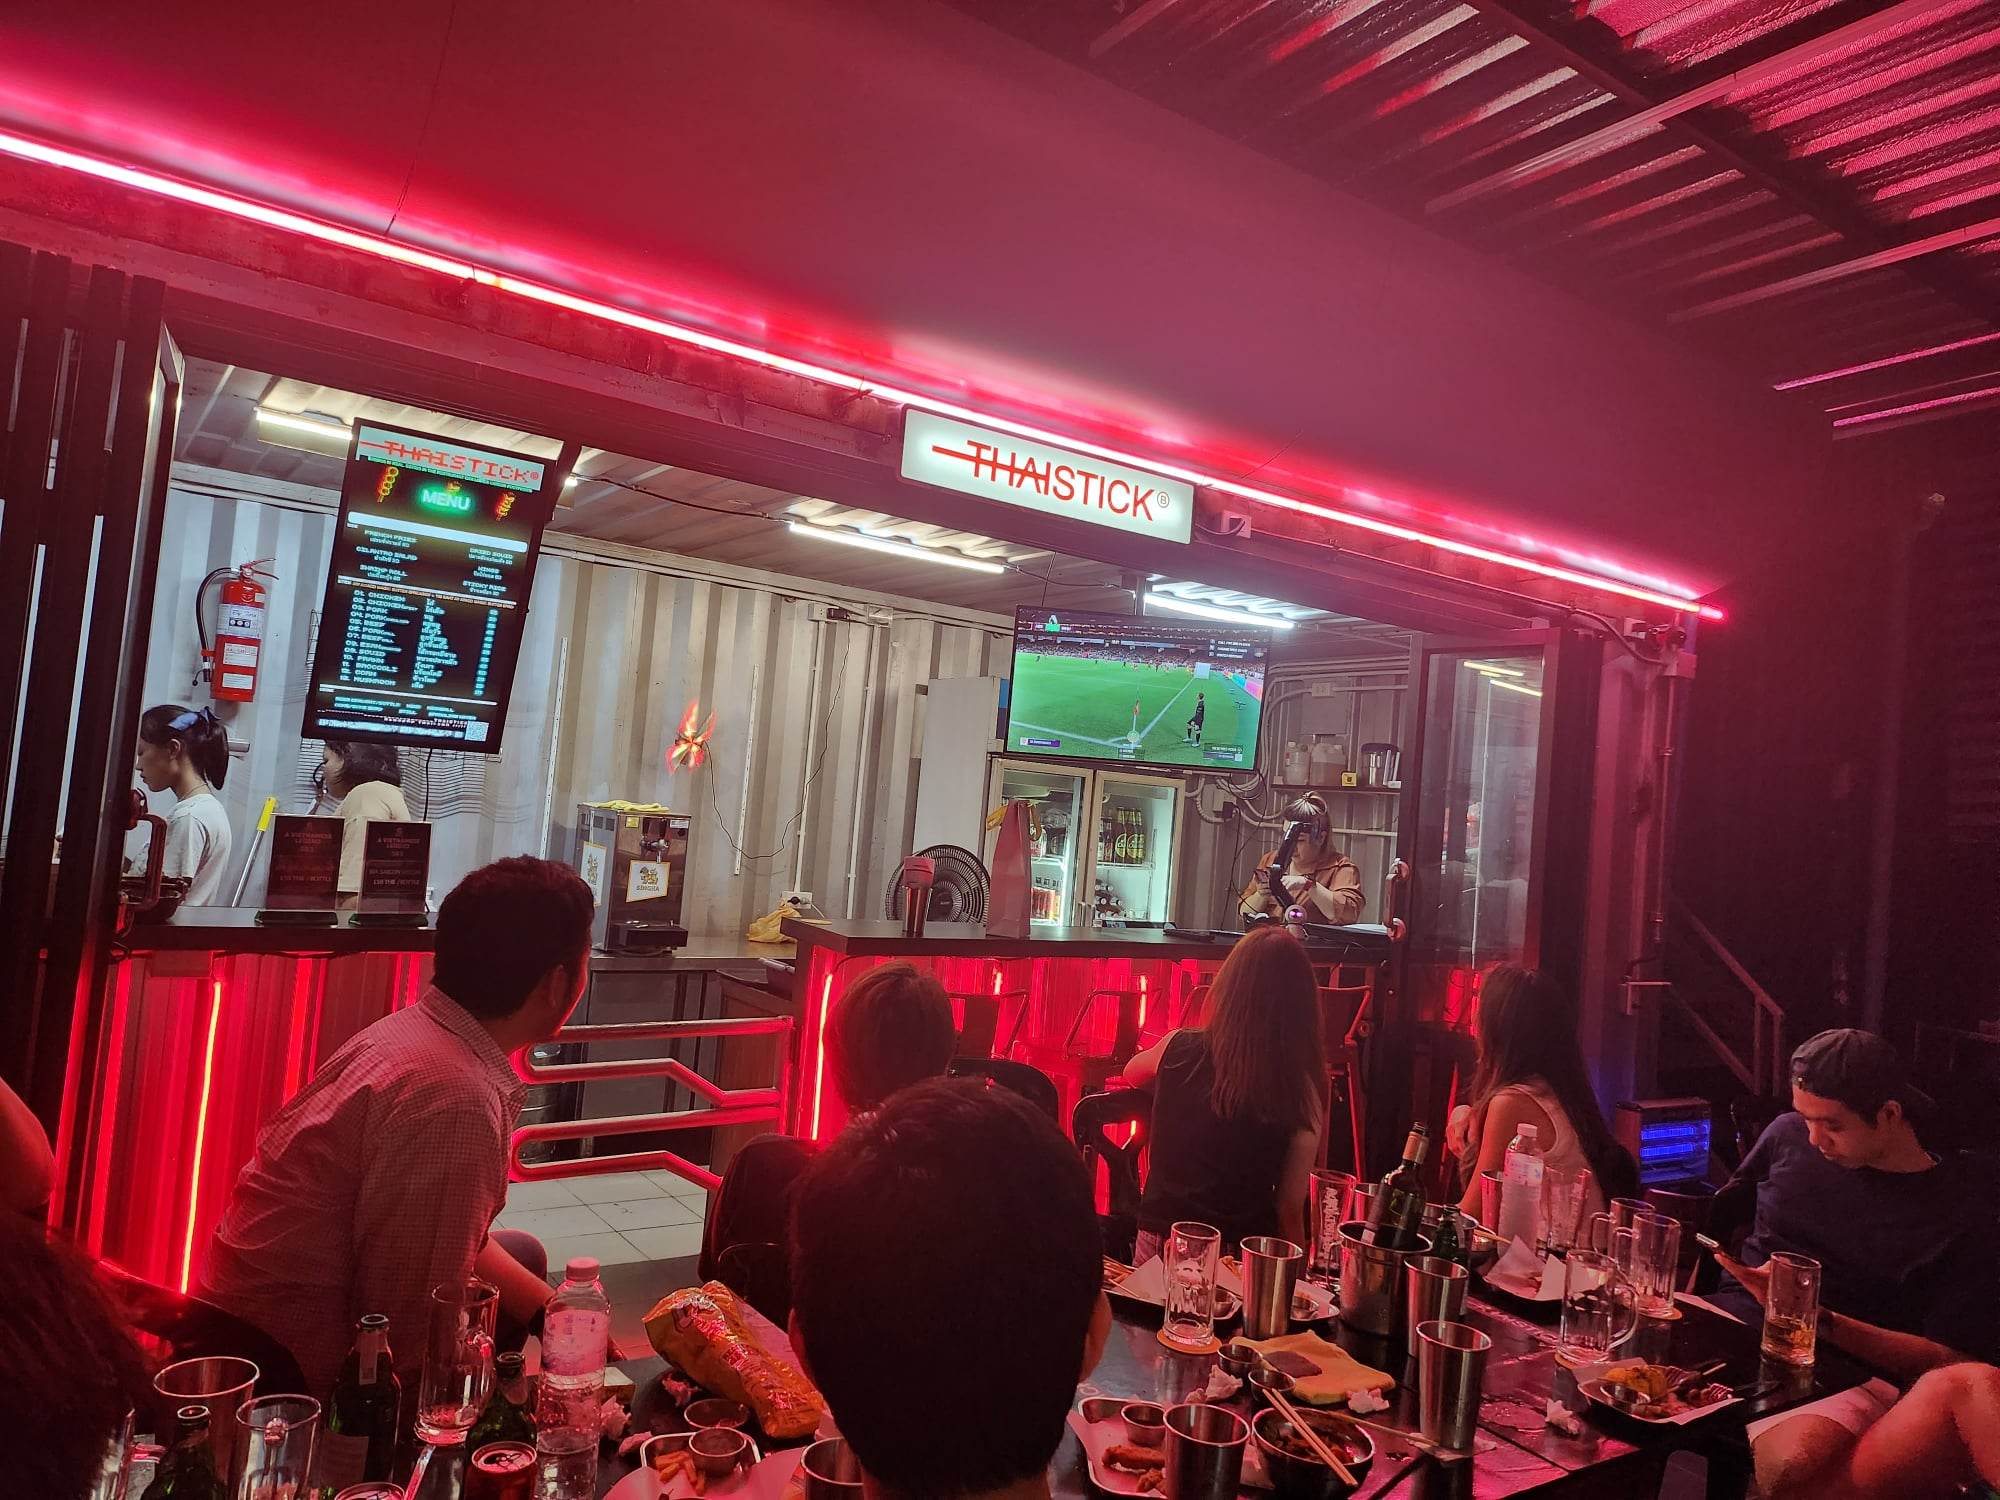 Thaistick Bar (Thaistick Bar) : กรุงเทพมหานคร (Bangkok)